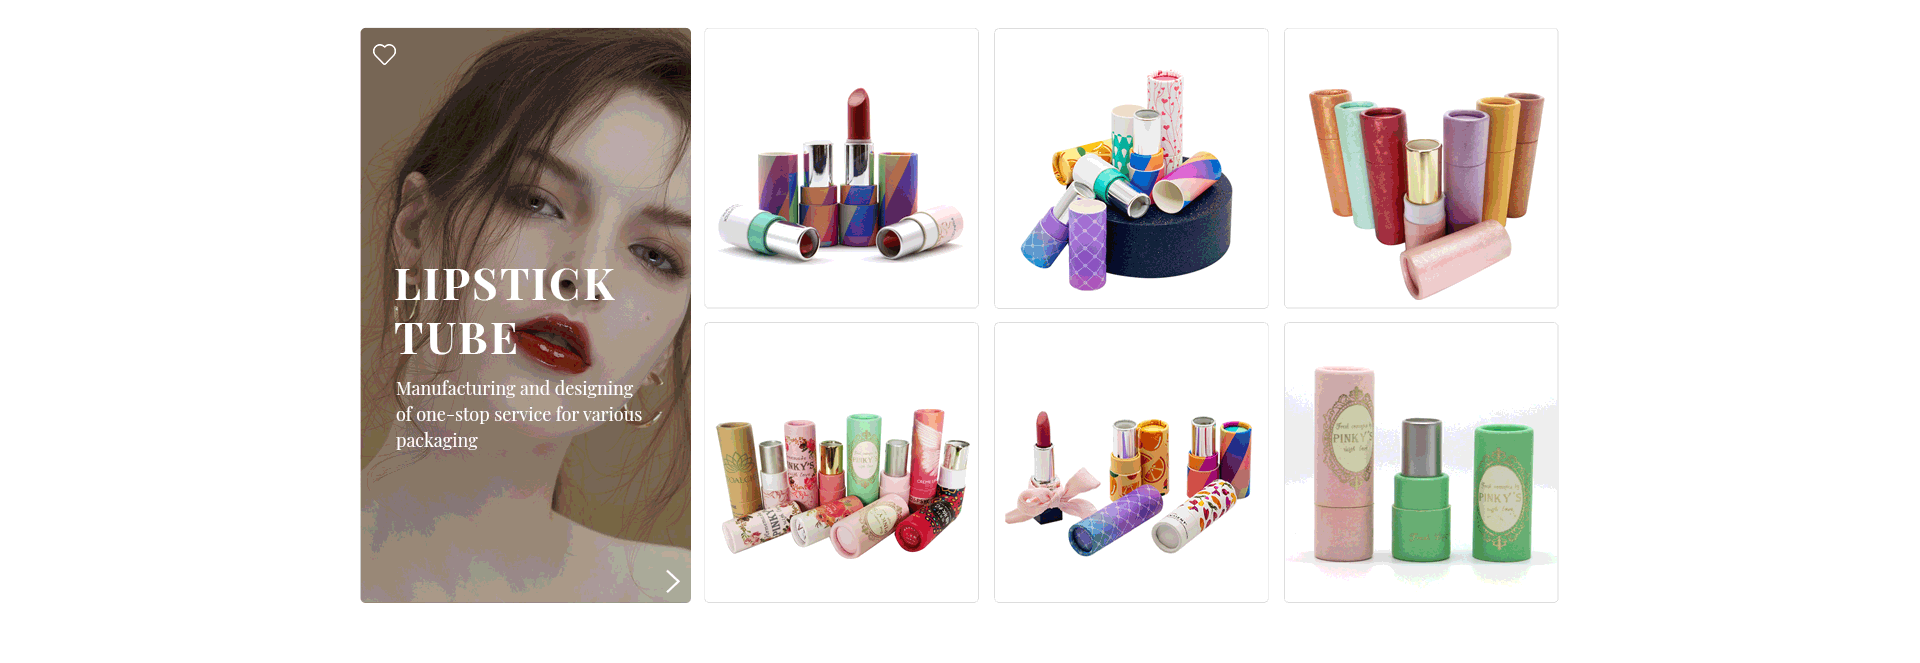 costom lipstick tube packaging